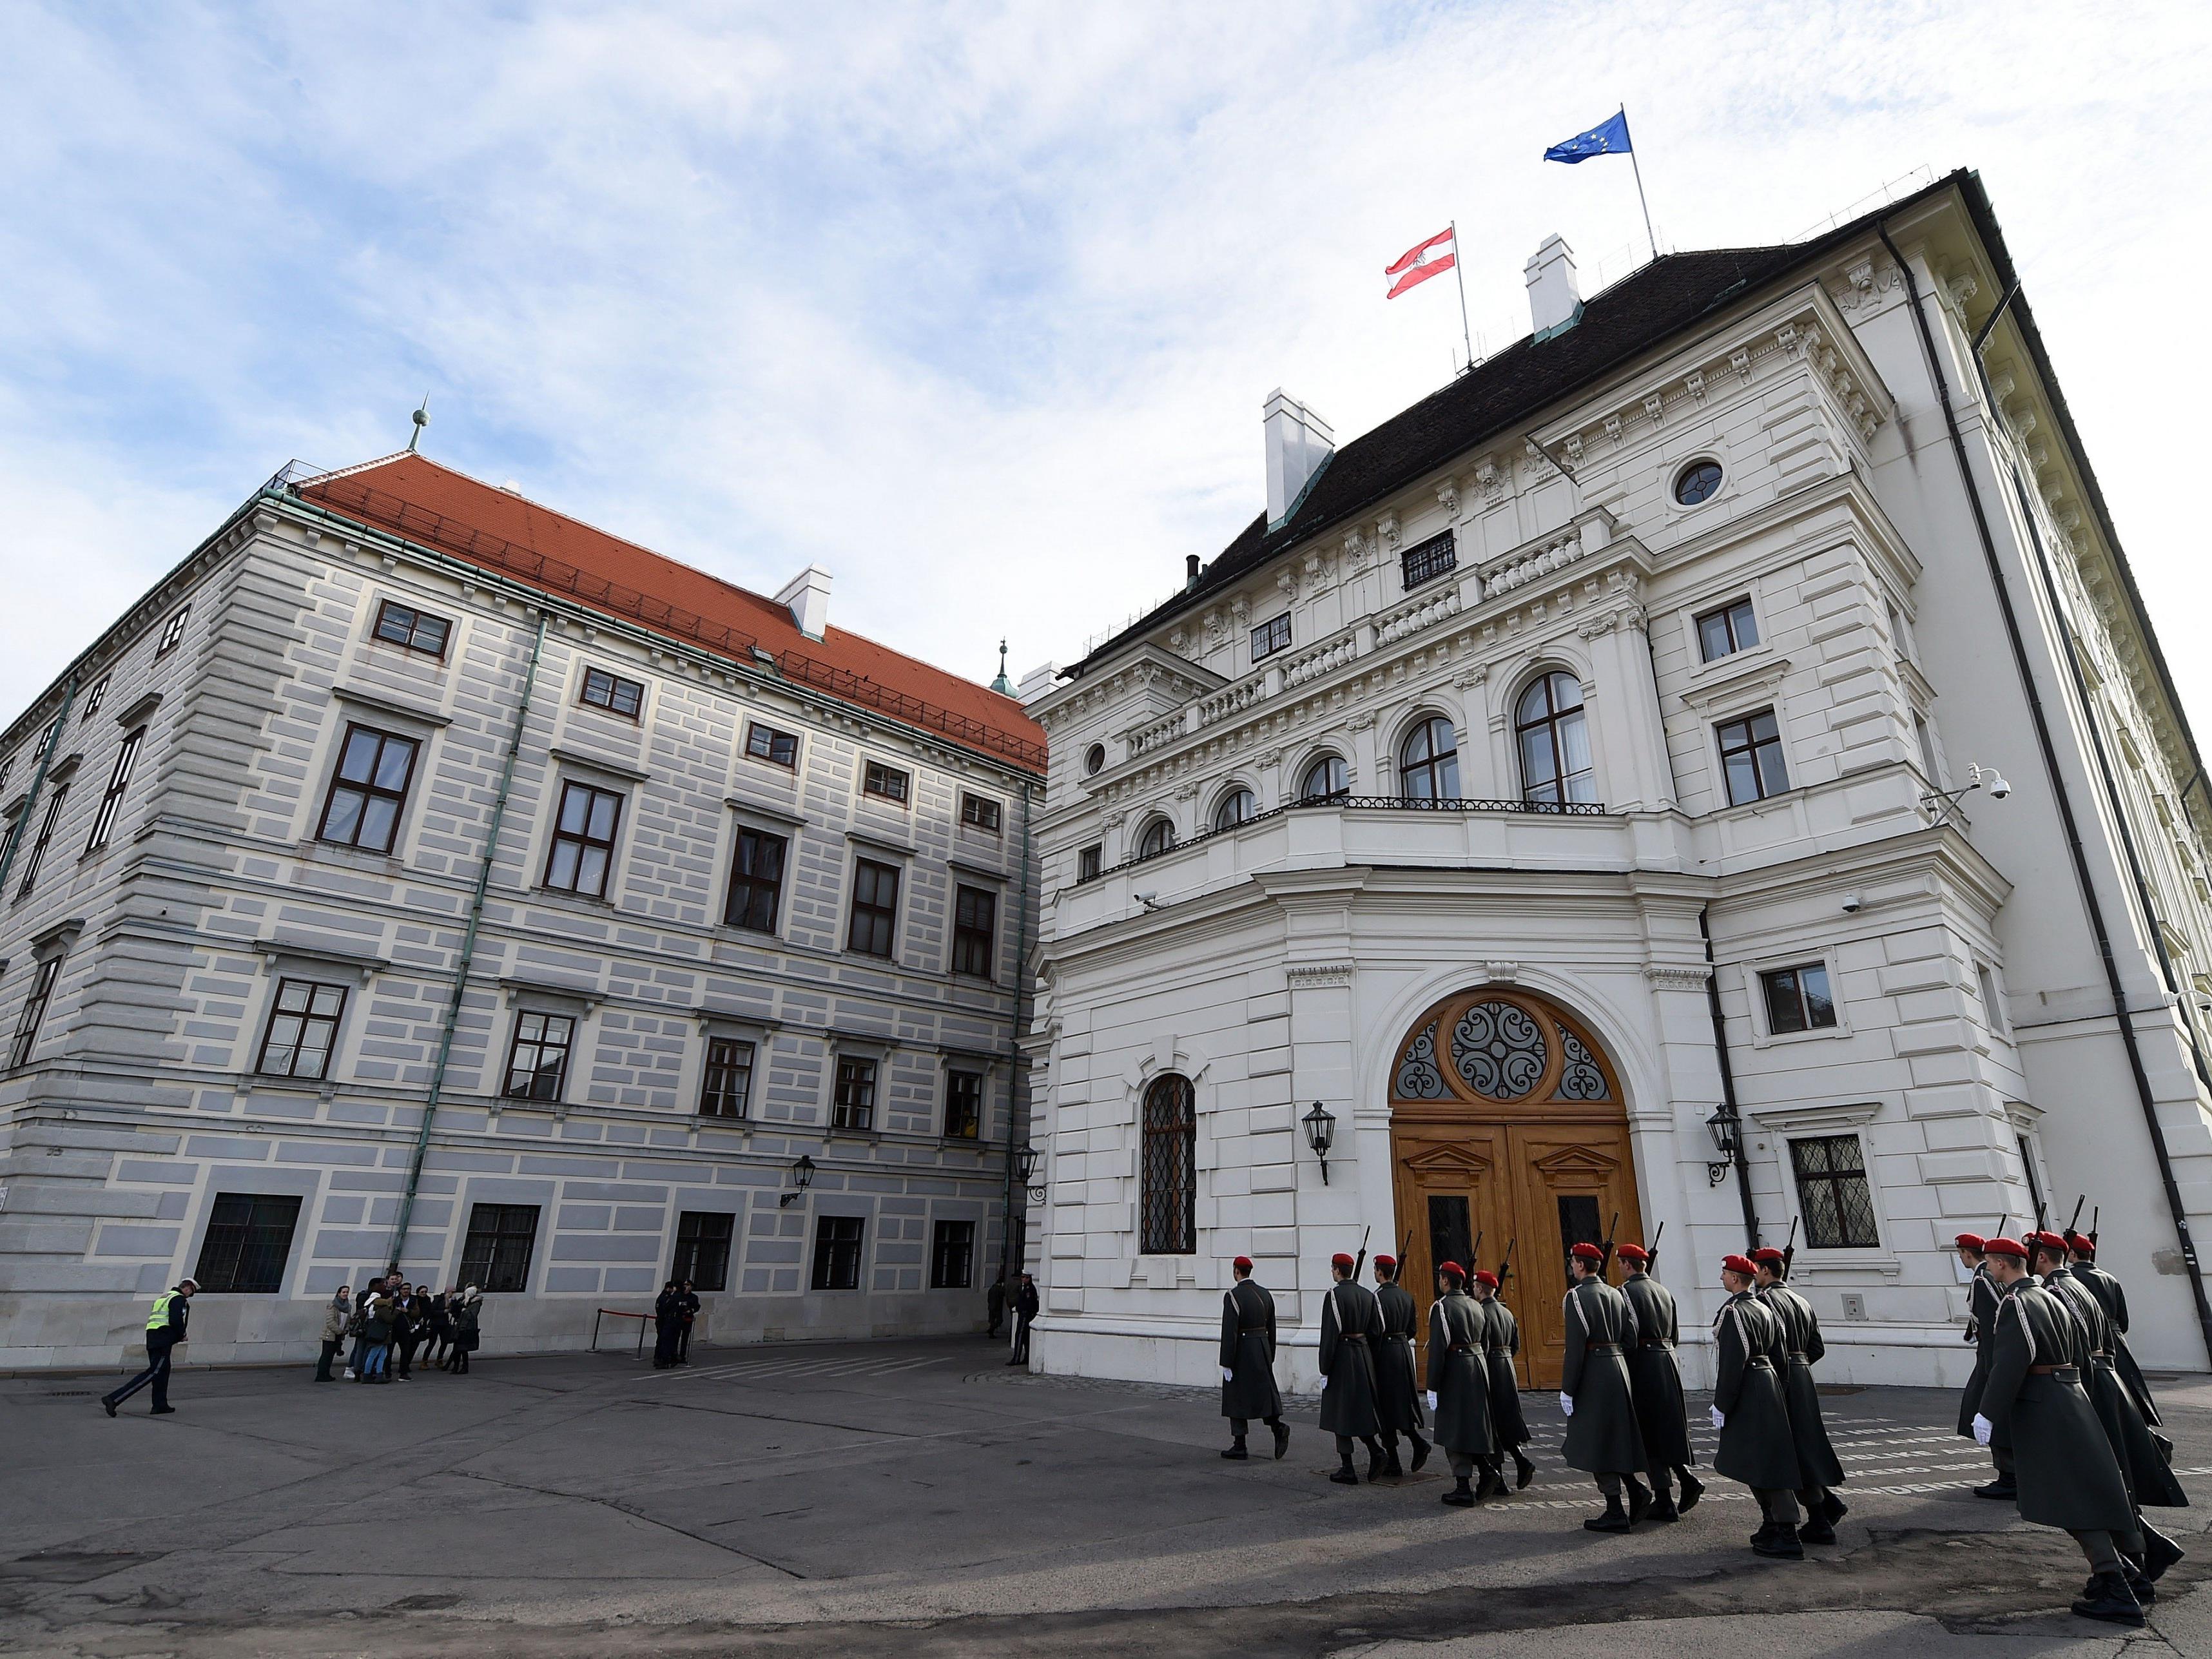 Die Präsidentschaftskanzlei der Hofburg: Wer hier wohnen will, scheint ein hohes Alter vorweisen zu müssen.